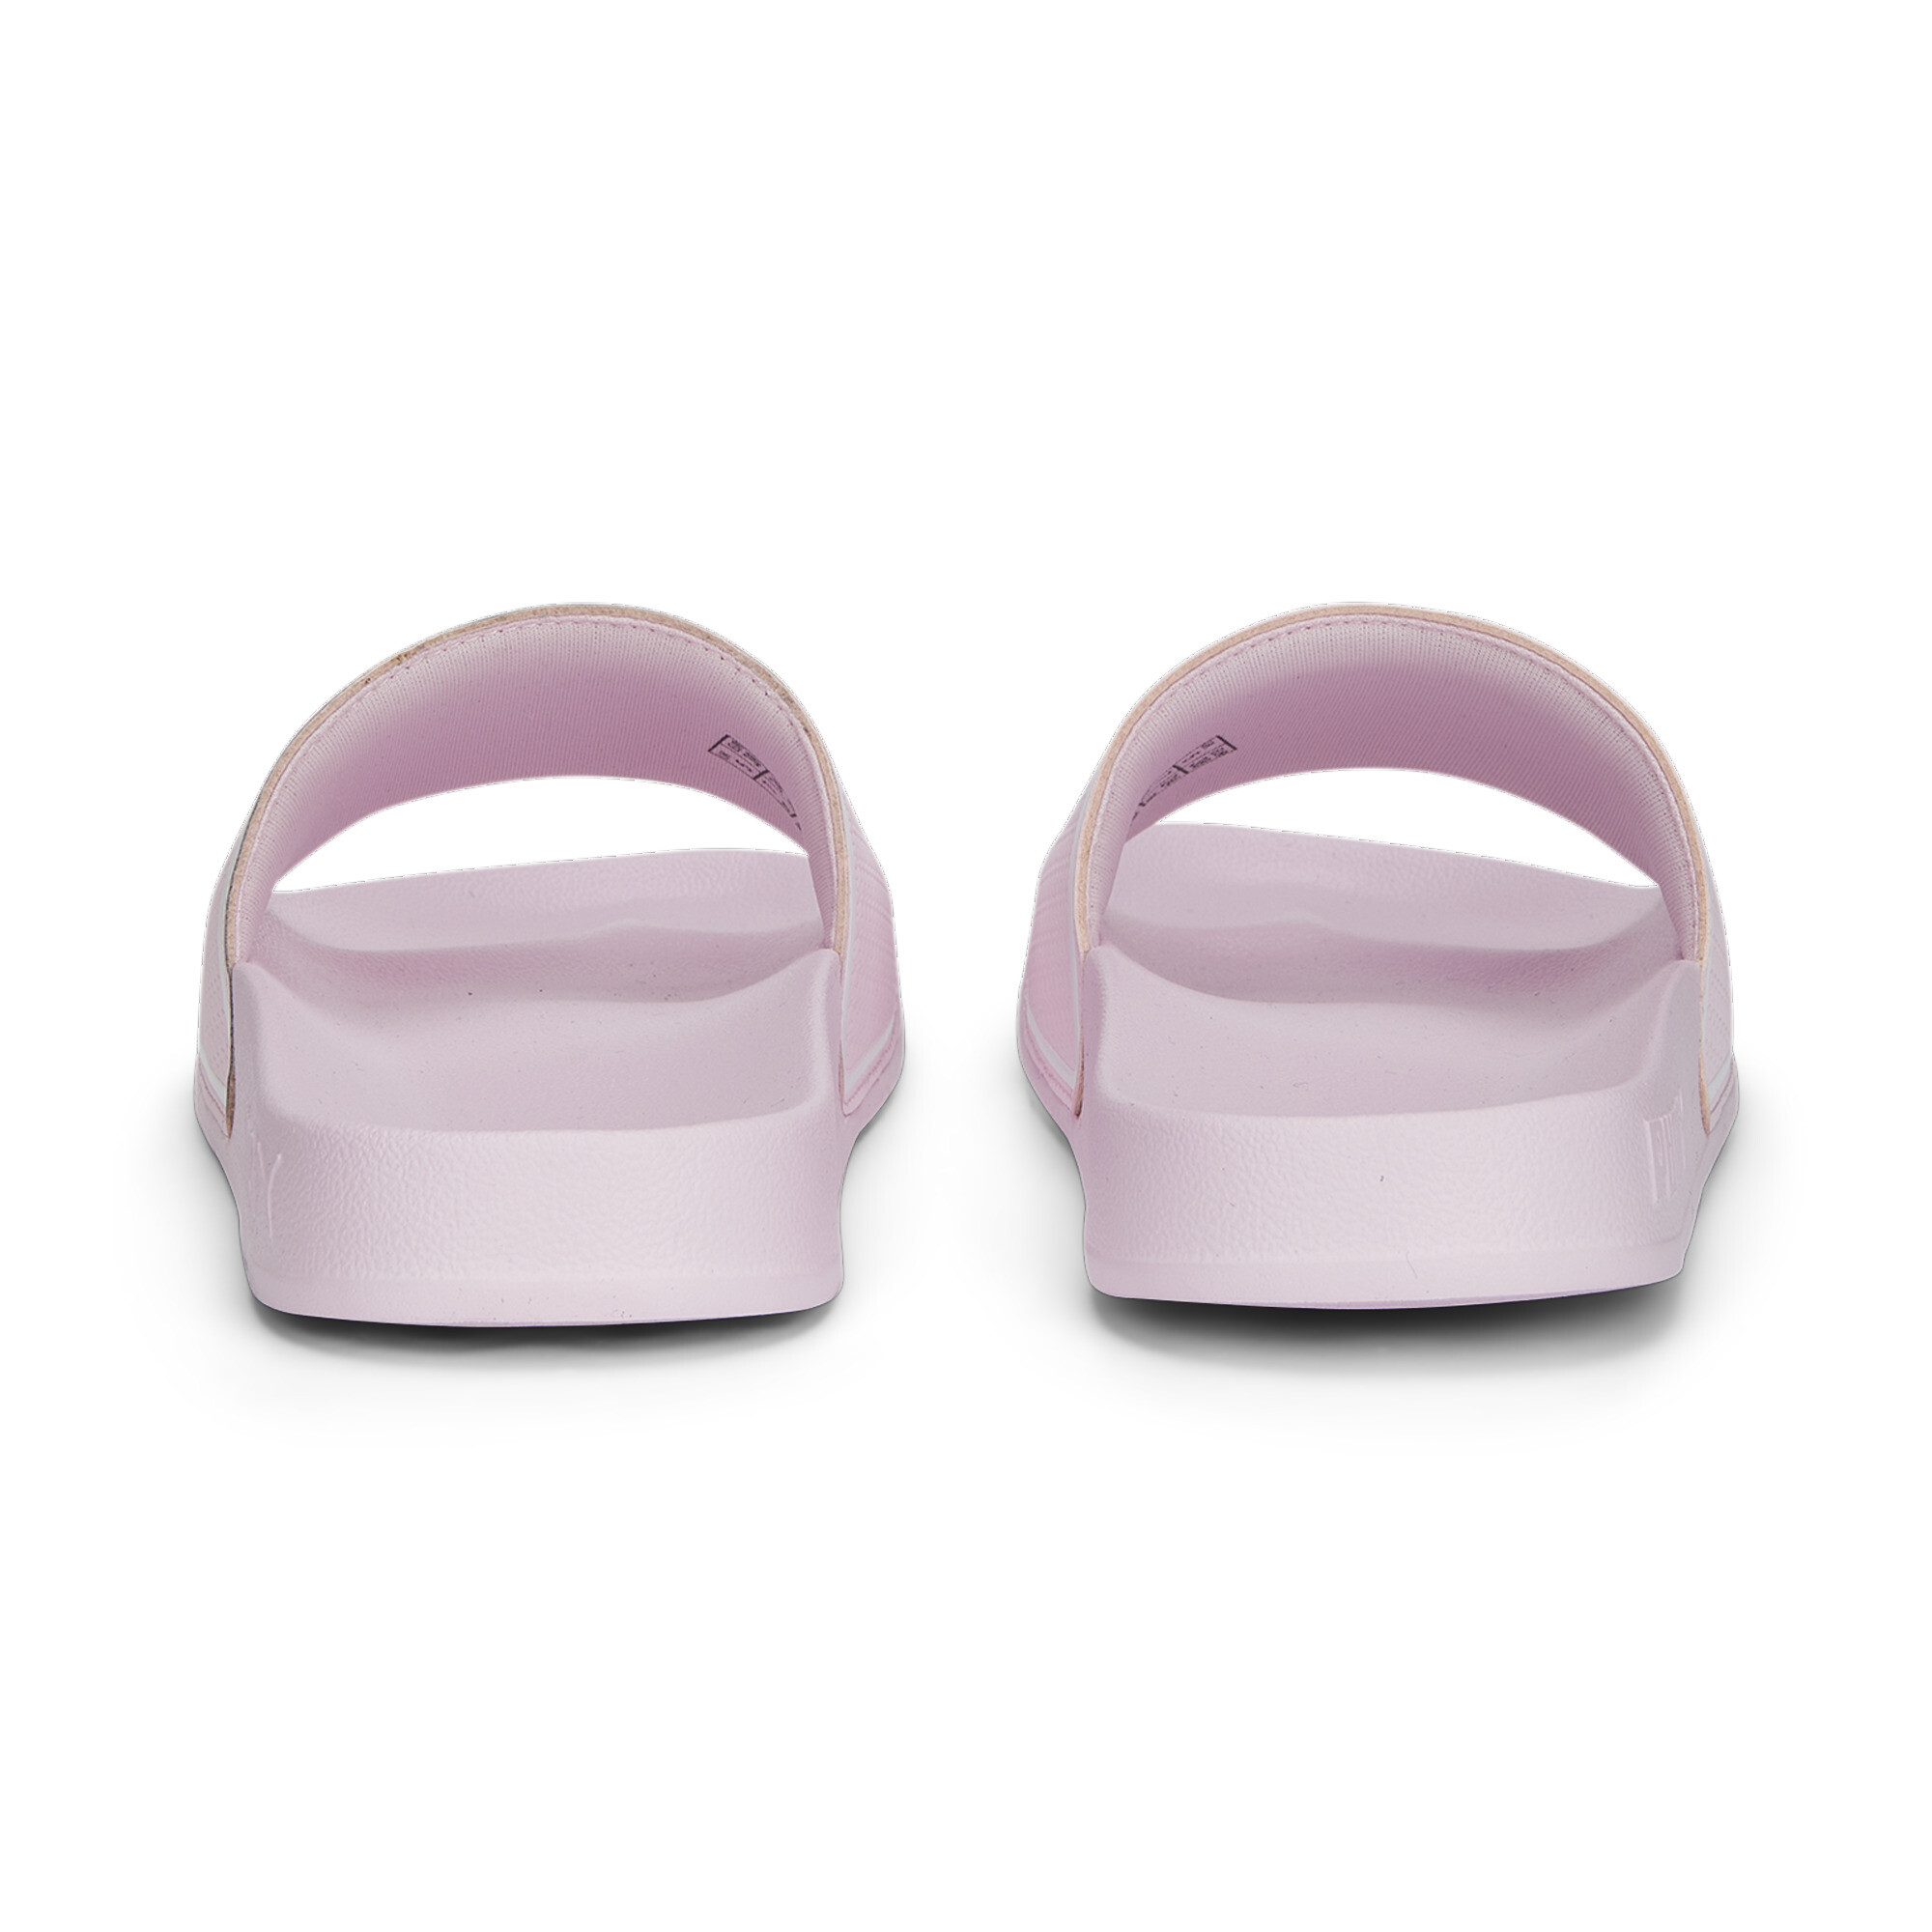 Men's PUMA Leadcat 2.0 Sandals In Pink, Size EU 40.5